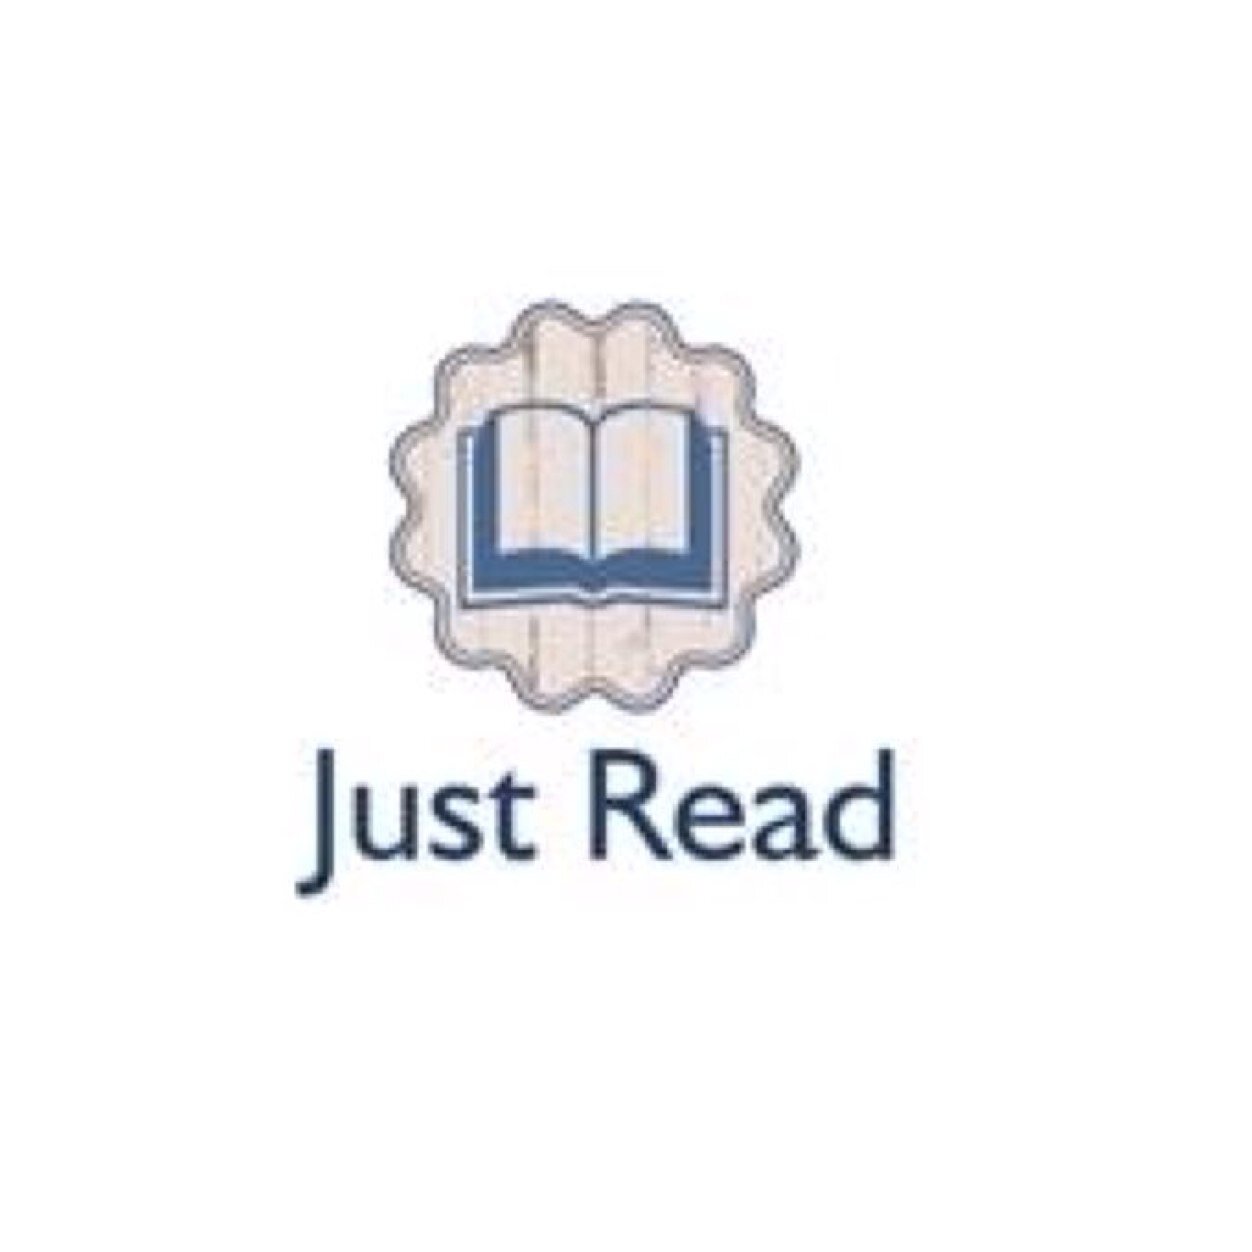 Just Read es un soporte para libros que se ajusta al pulgar y se adpta para mantener las páginas de un libro abiertas.